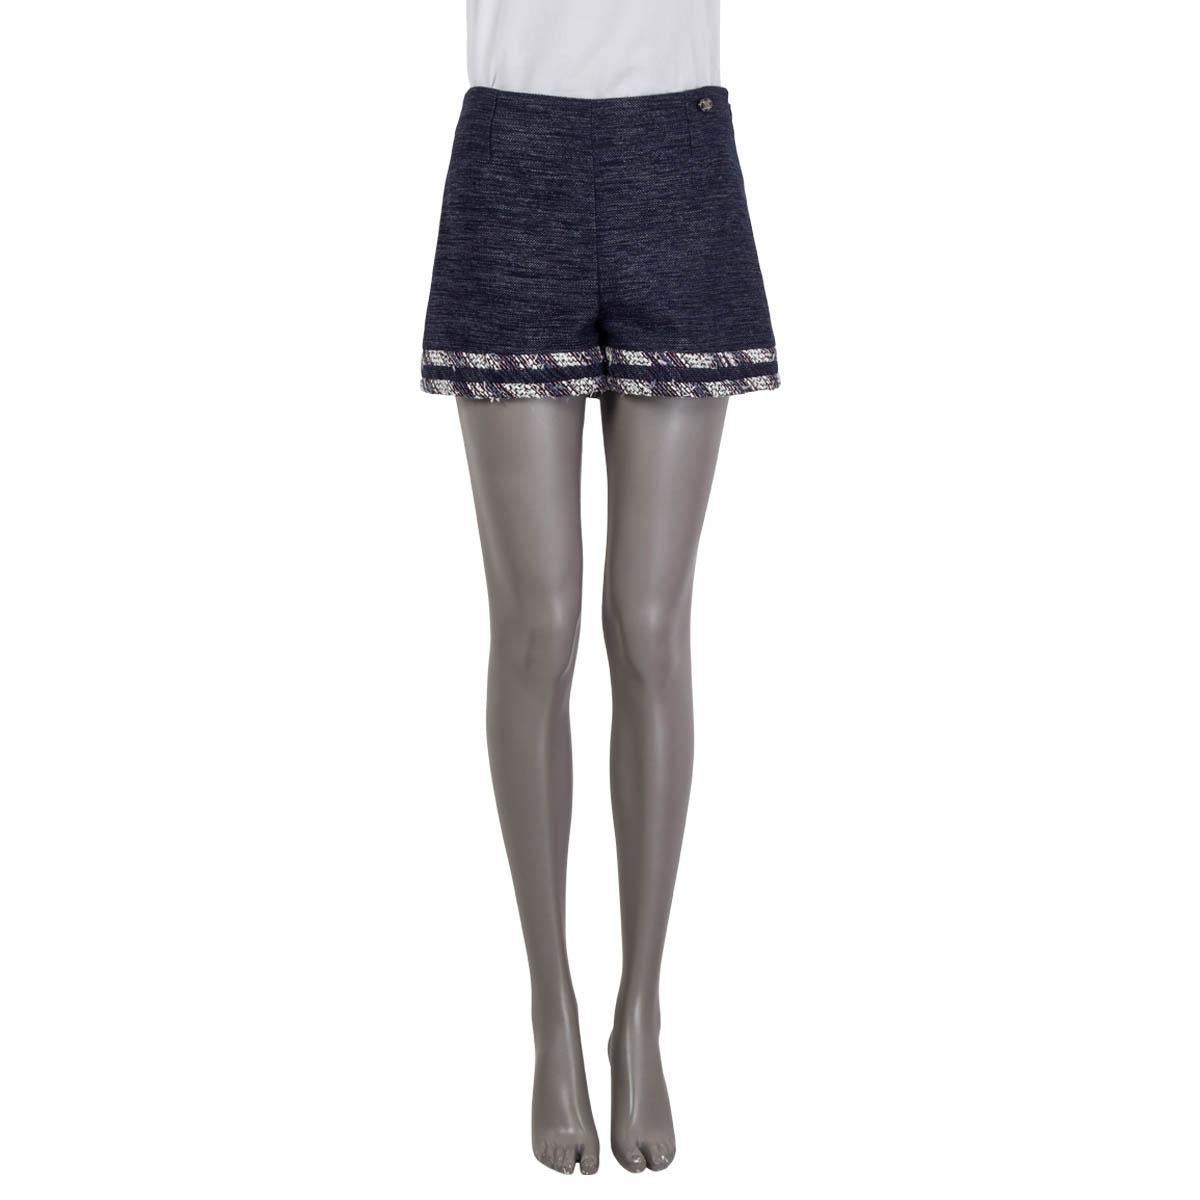 100% authentische Chanel 2013 Tweed-Shorts in rauchigem Lila, Blau und Weiß aus Baumwolle (50%), Wolle (30%) und Polyester (20%). Hat ein marineblaues 'CC'-Emblem auf der Vorderseite. Wird mit einem verdeckten Reißverschluss und einem Haken an der